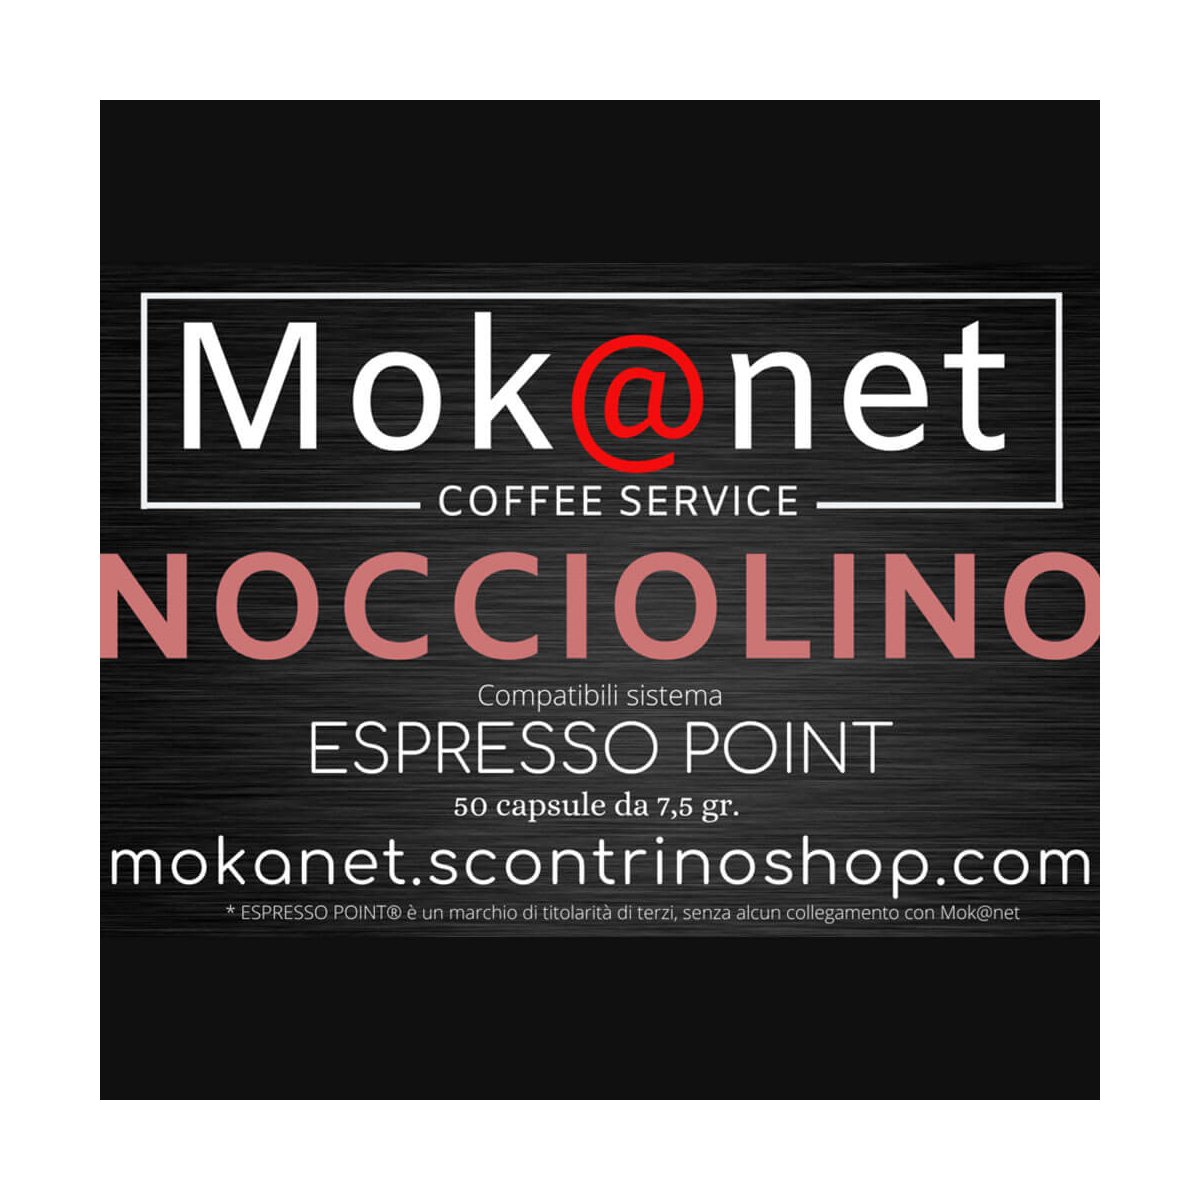 100 CAPSULE COMPATIBILI ESPRESSO POINT MOK@NET "NOCCIOLINO"